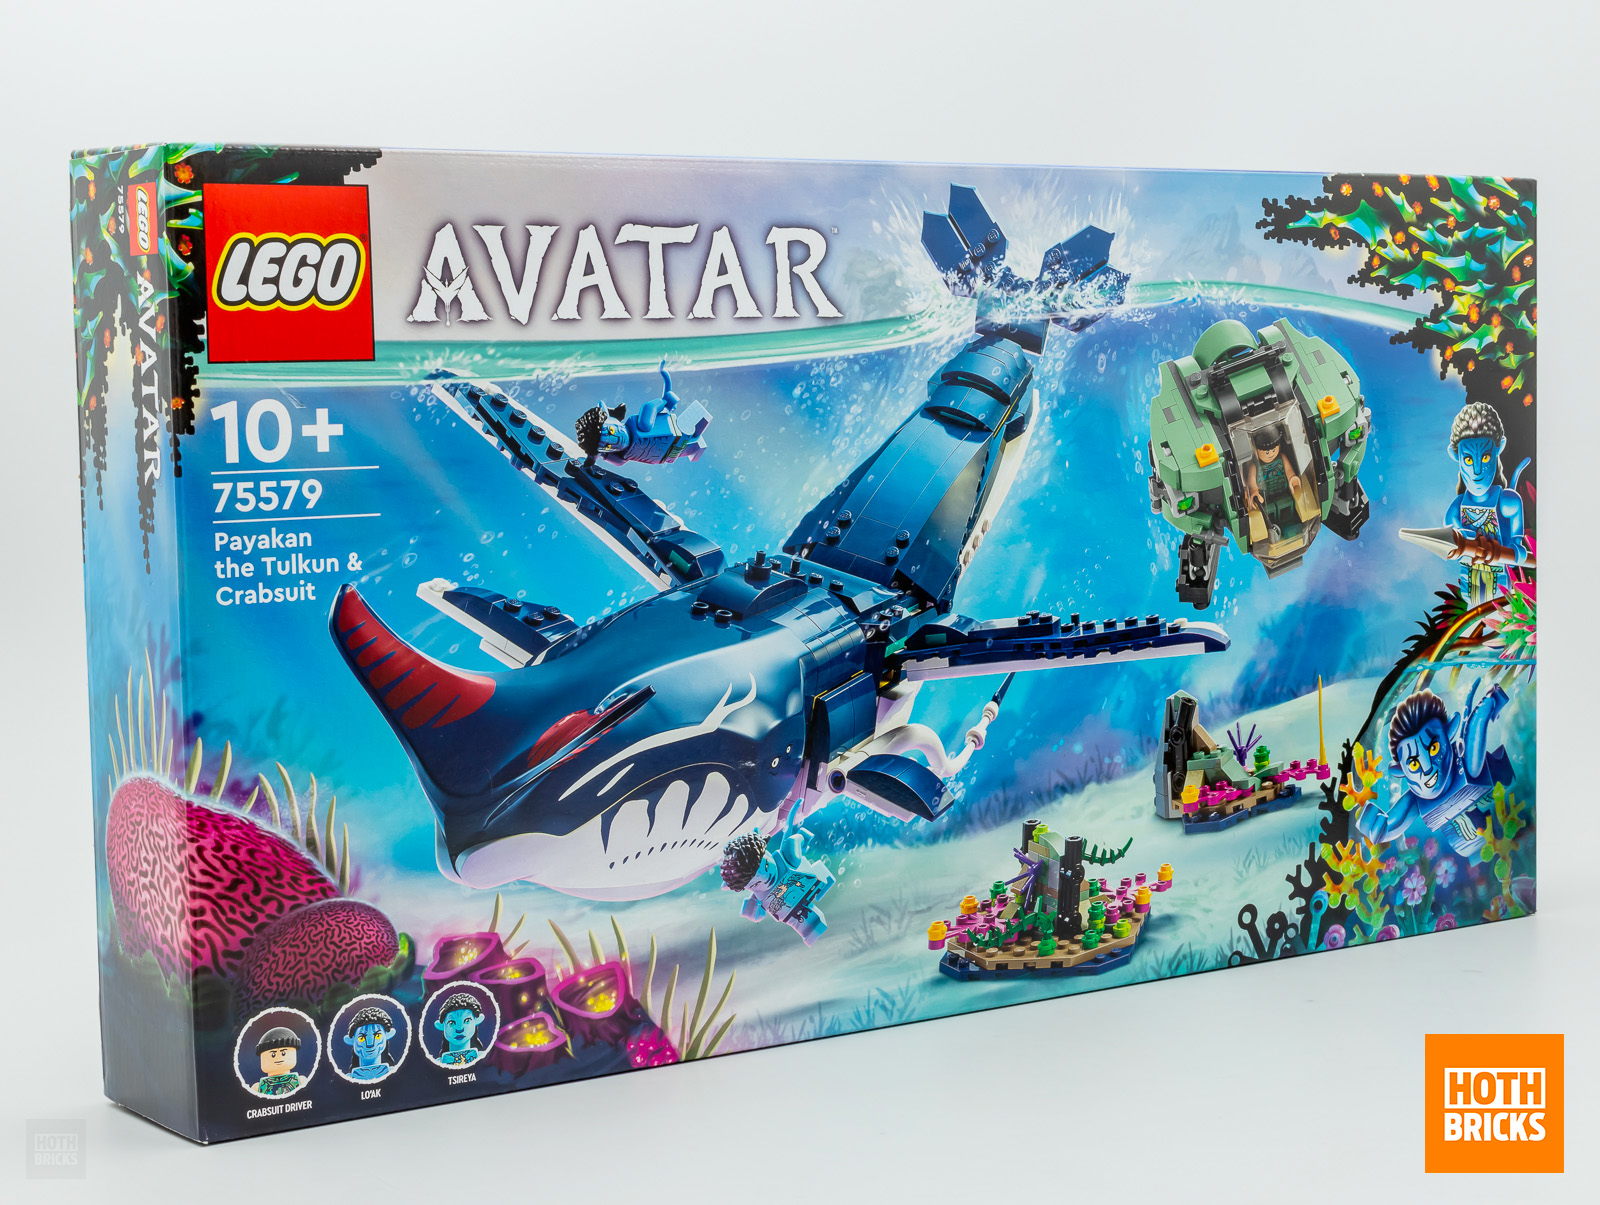 Concours : un exemplaire du set LEGO Avatar 75579 Payakan The Tulkun & Crabsuit à gagner !